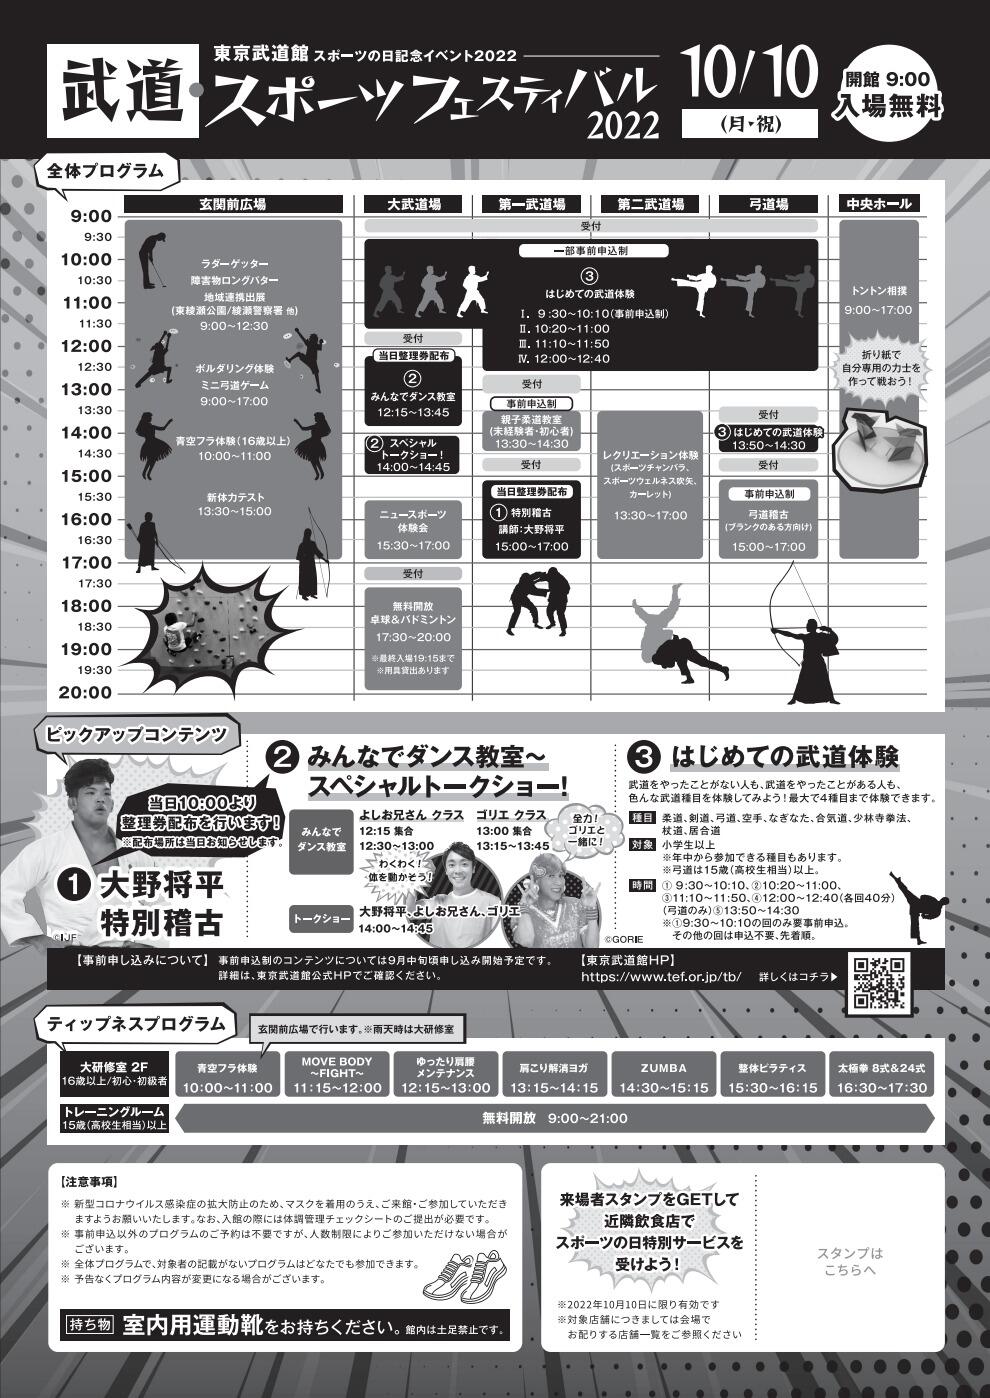 武道・スポーツフェスティバル2022「はじめての武道体験」【少林寺拳法】